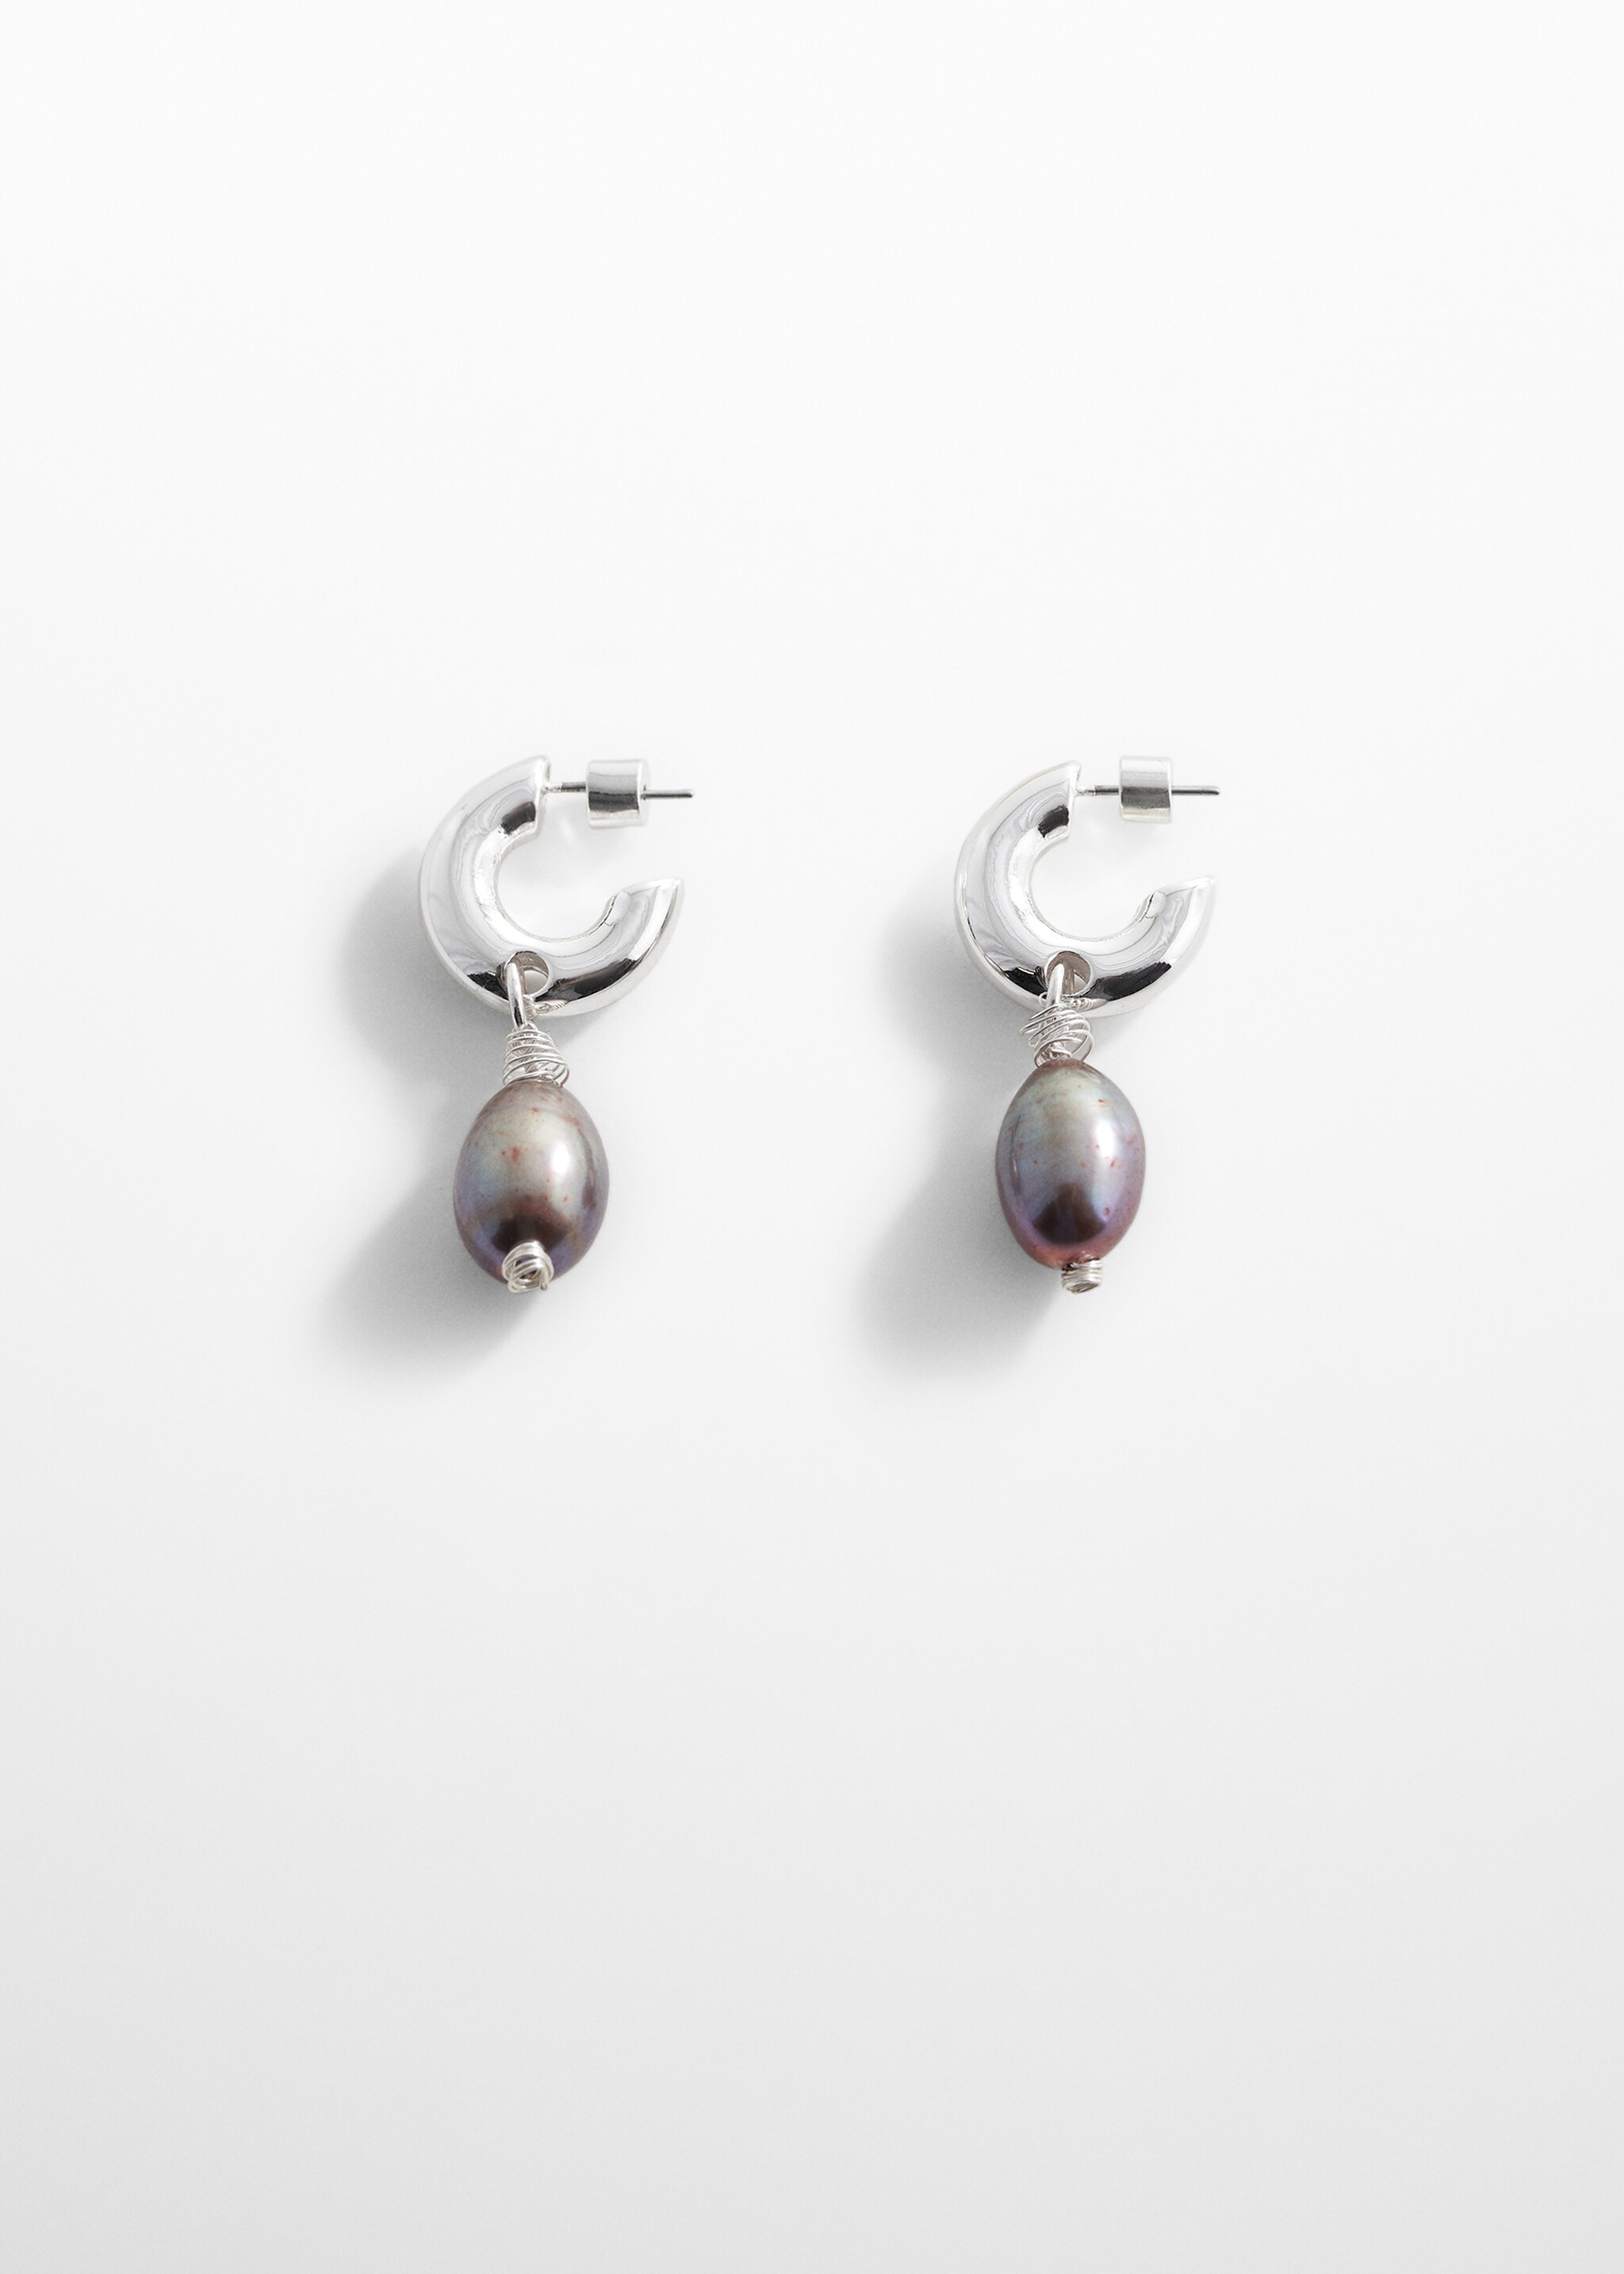 Orecchini pendente perla naturale - Articolo senza modello